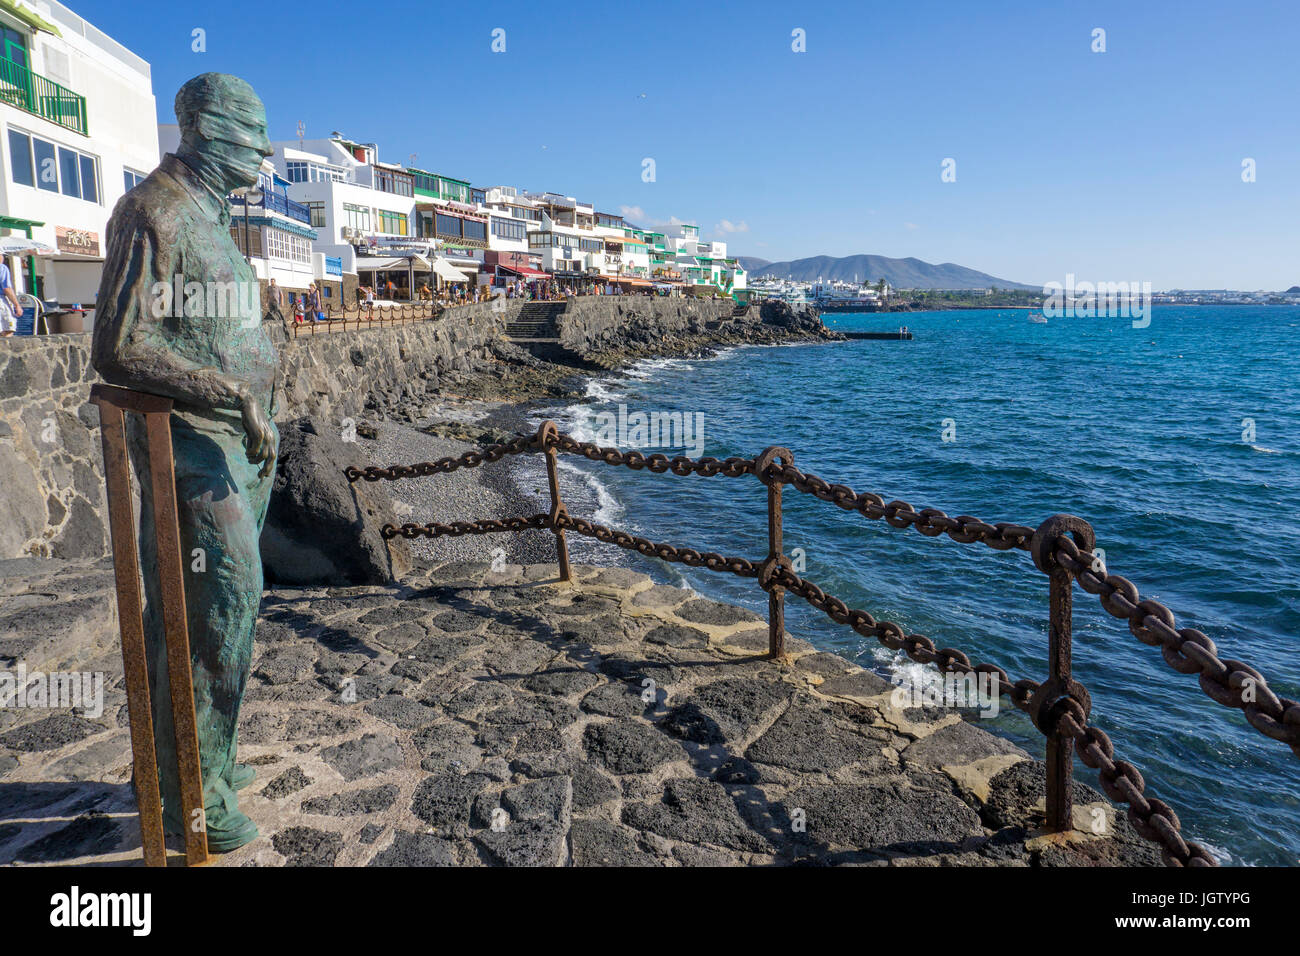 Estatua de bronce en honor de la vieja generación de artistas canarios Chano Navarro Betancor, en el paseo de la playa de Playa Blanca, Lanzarote, Islas Canarias Foto de stock